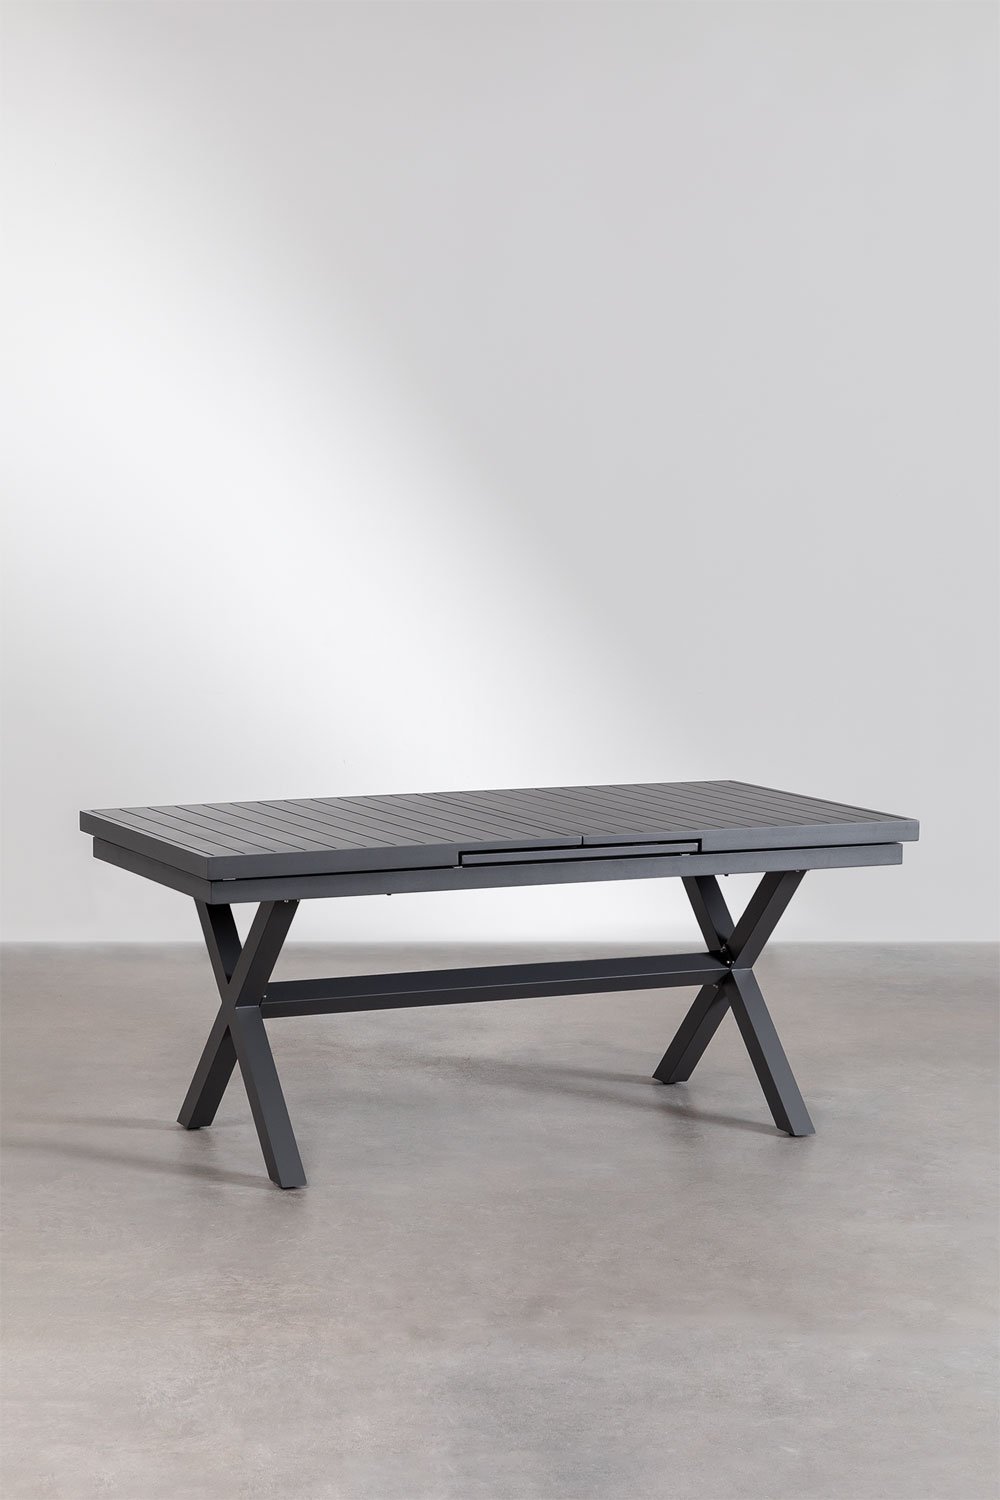 Table à manger rectangulaire extensible en aluminium (180-240x90 cm) Karena, image de la galerie 1